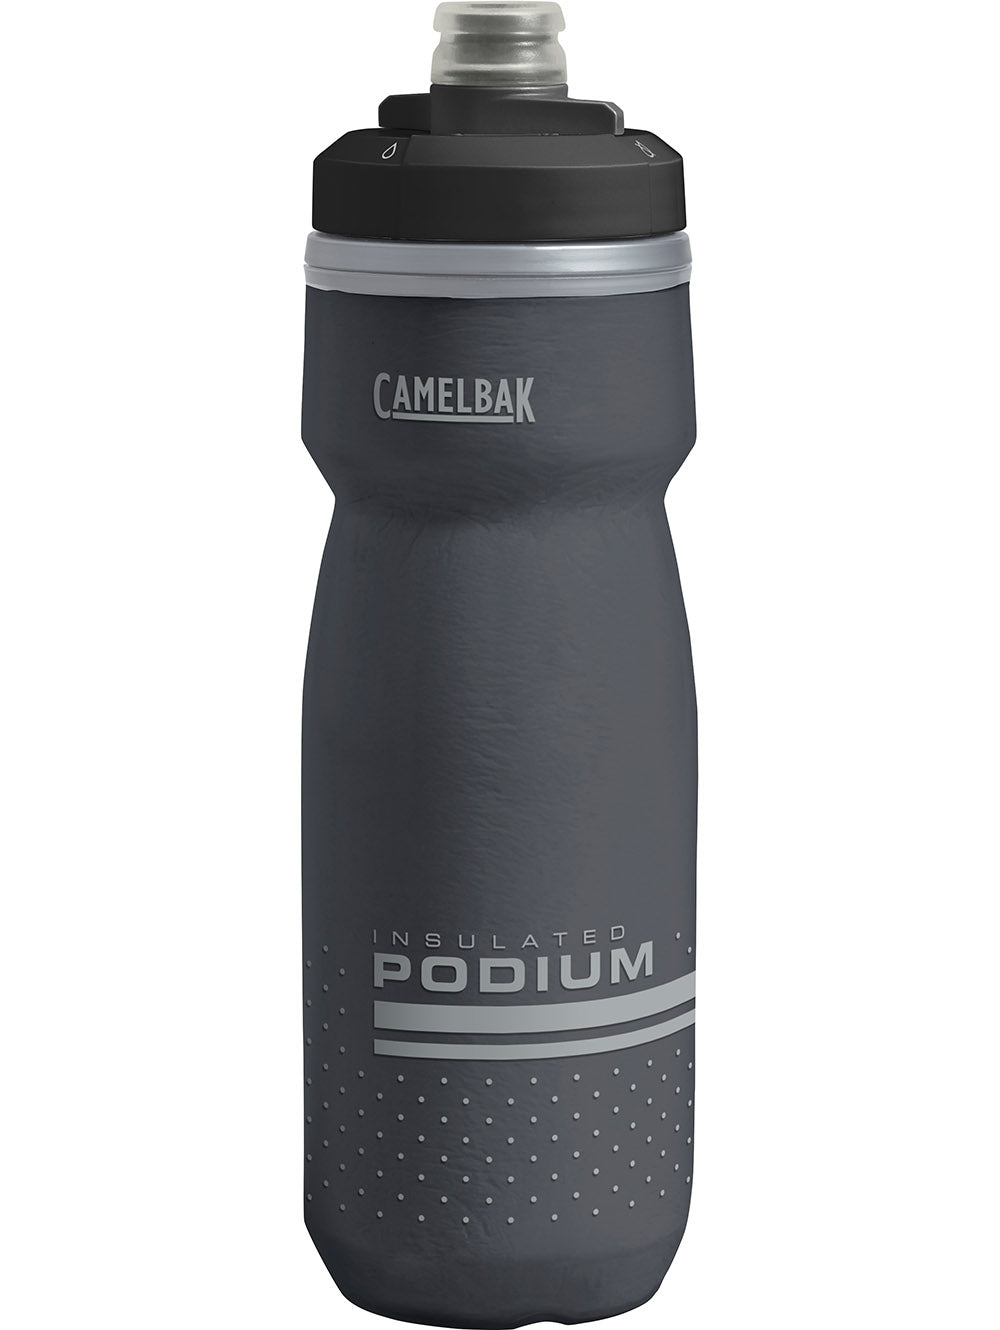 camelbak-bottle-insulated-podium-chill-black-600ml